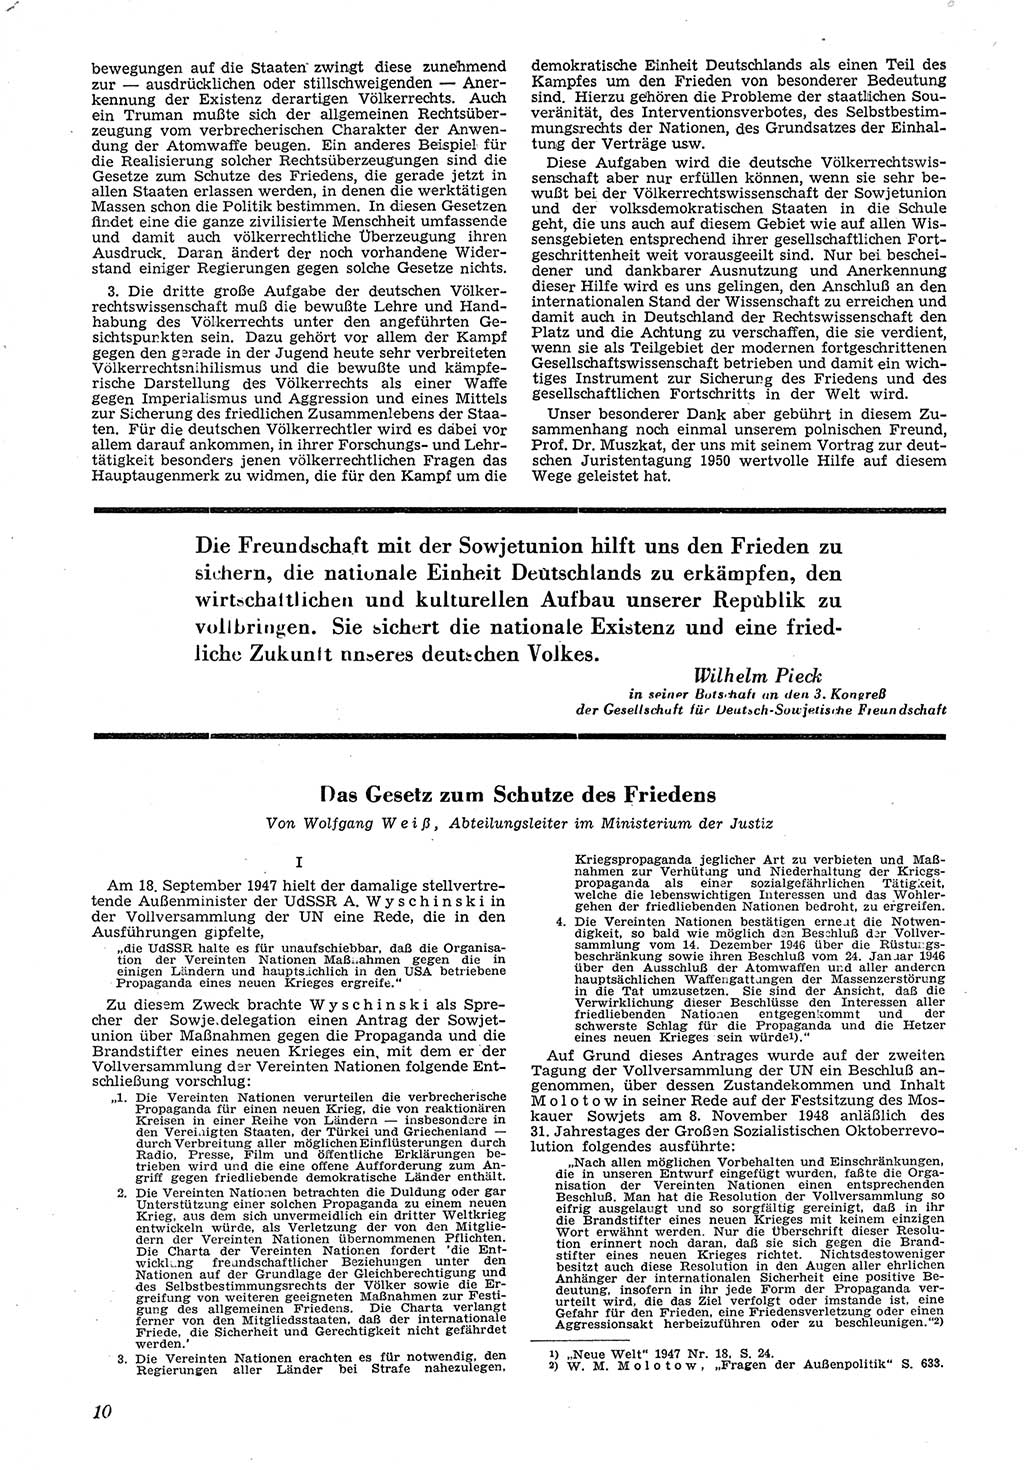 Neue Justiz (NJ), Zeitschrift für Recht und Rechtswissenschaft [Deutsche Demokratische Republik (DDR)], 5. Jahrgang 1951, Seite 10 (NJ DDR 1951, S. 10)